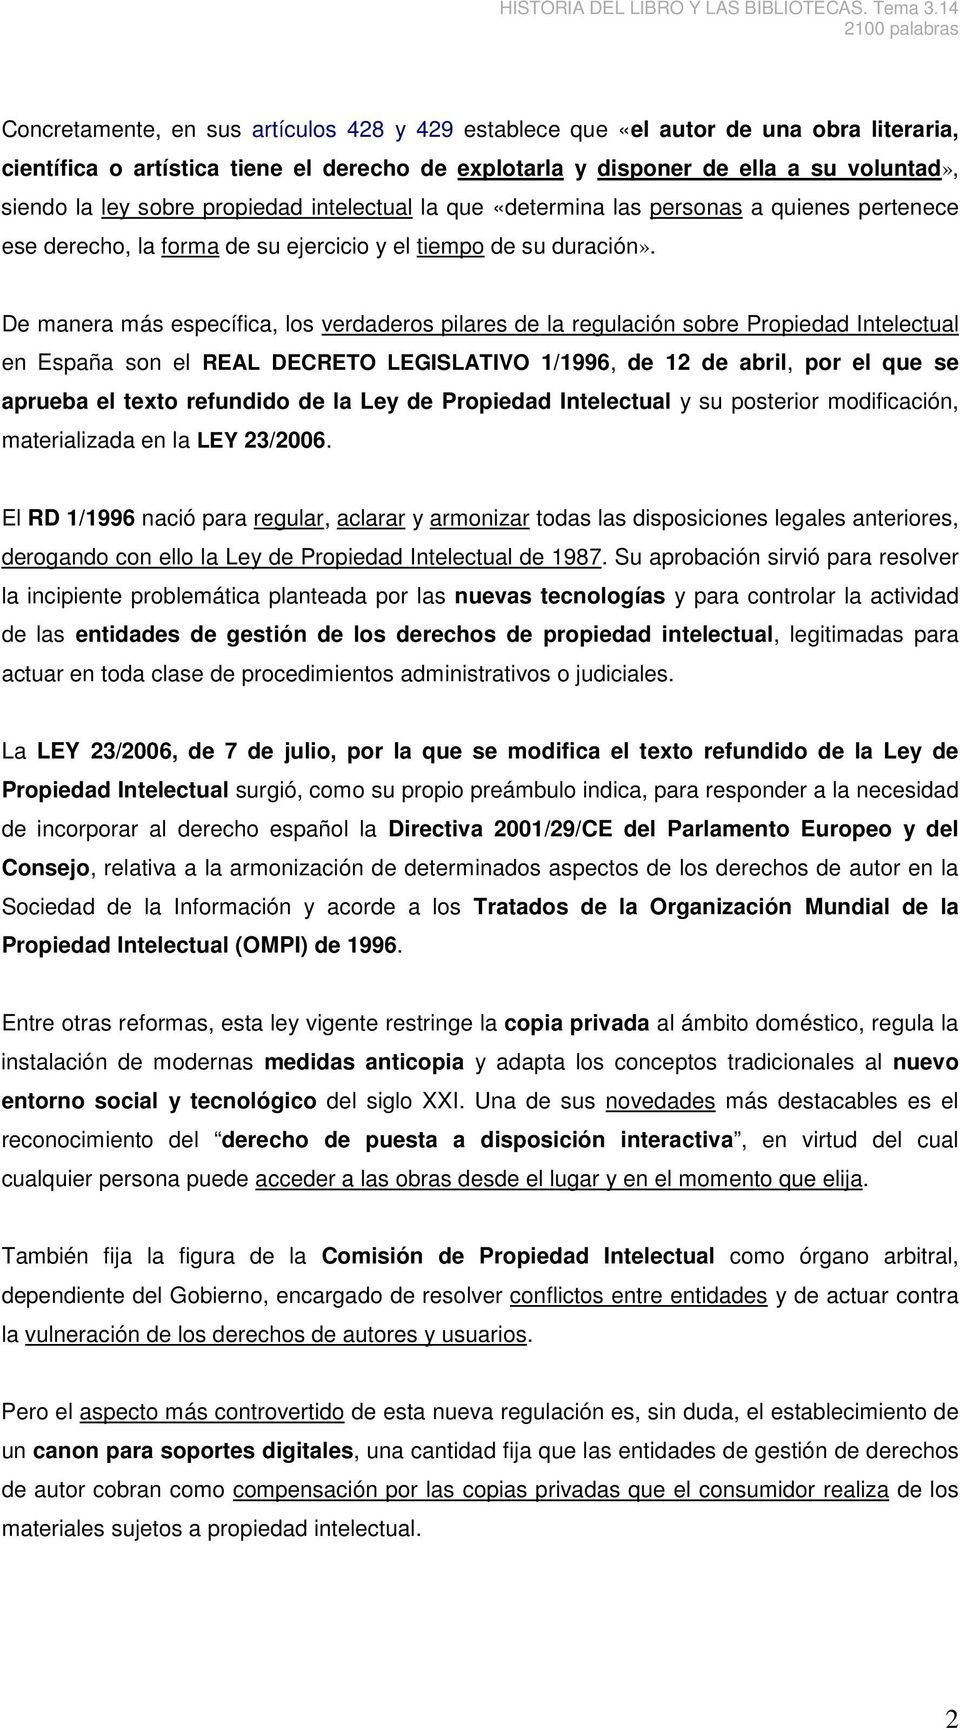 De manera más específica, los verdaderos pilares de la regulación sobre Propiedad Intelectual en España son el REAL DECRETO LEGISLATIVO 1/1996, de 12 de abril, por el que se aprueba el texto